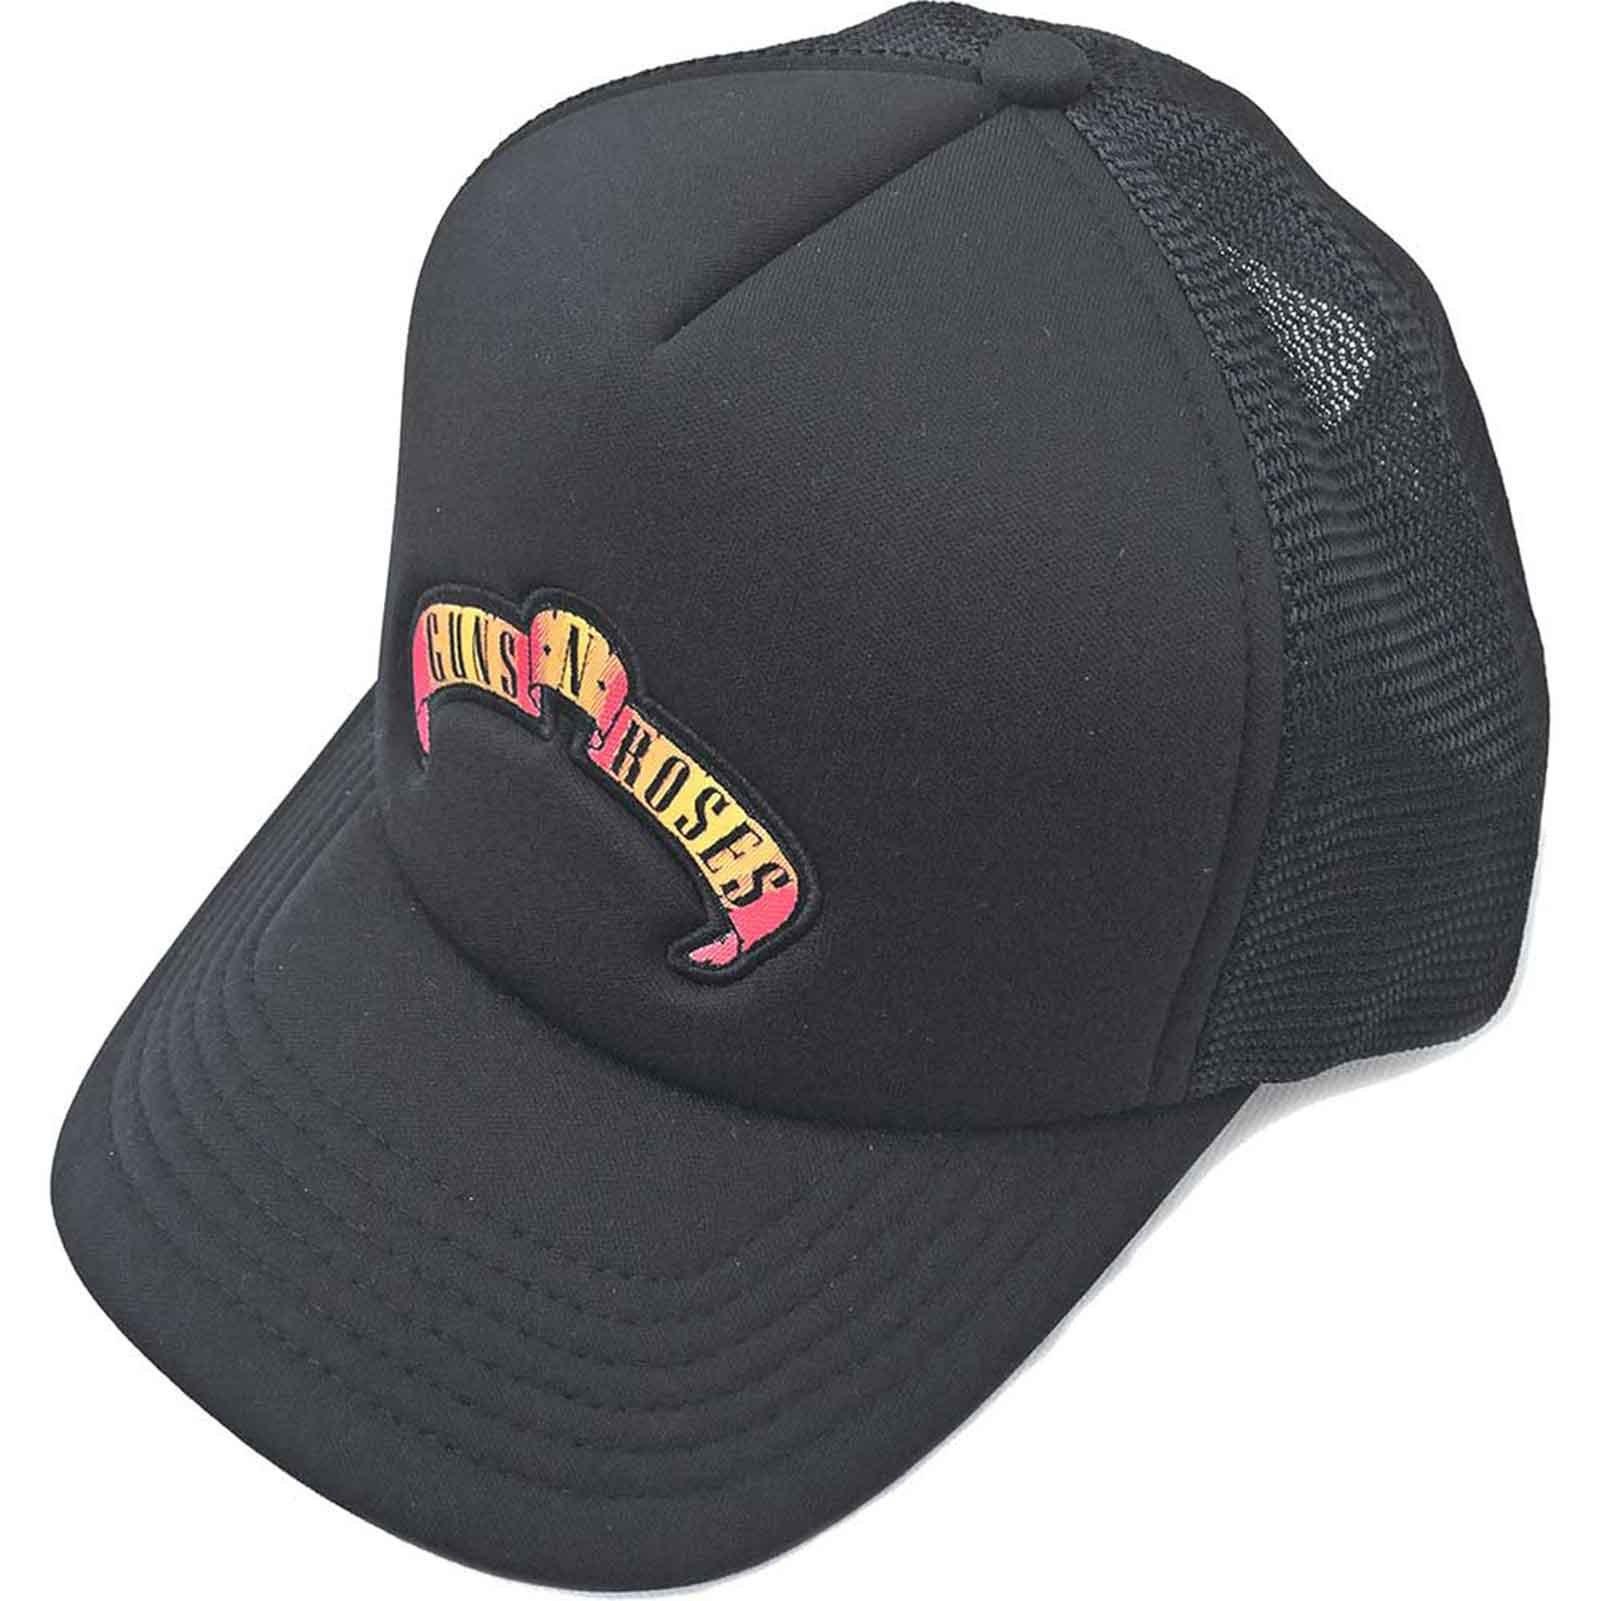 Бейсболка Trucker с полосой прокрутки и логотипом Guns N Roses, черный мешок для сменной обуви guns n roses 8